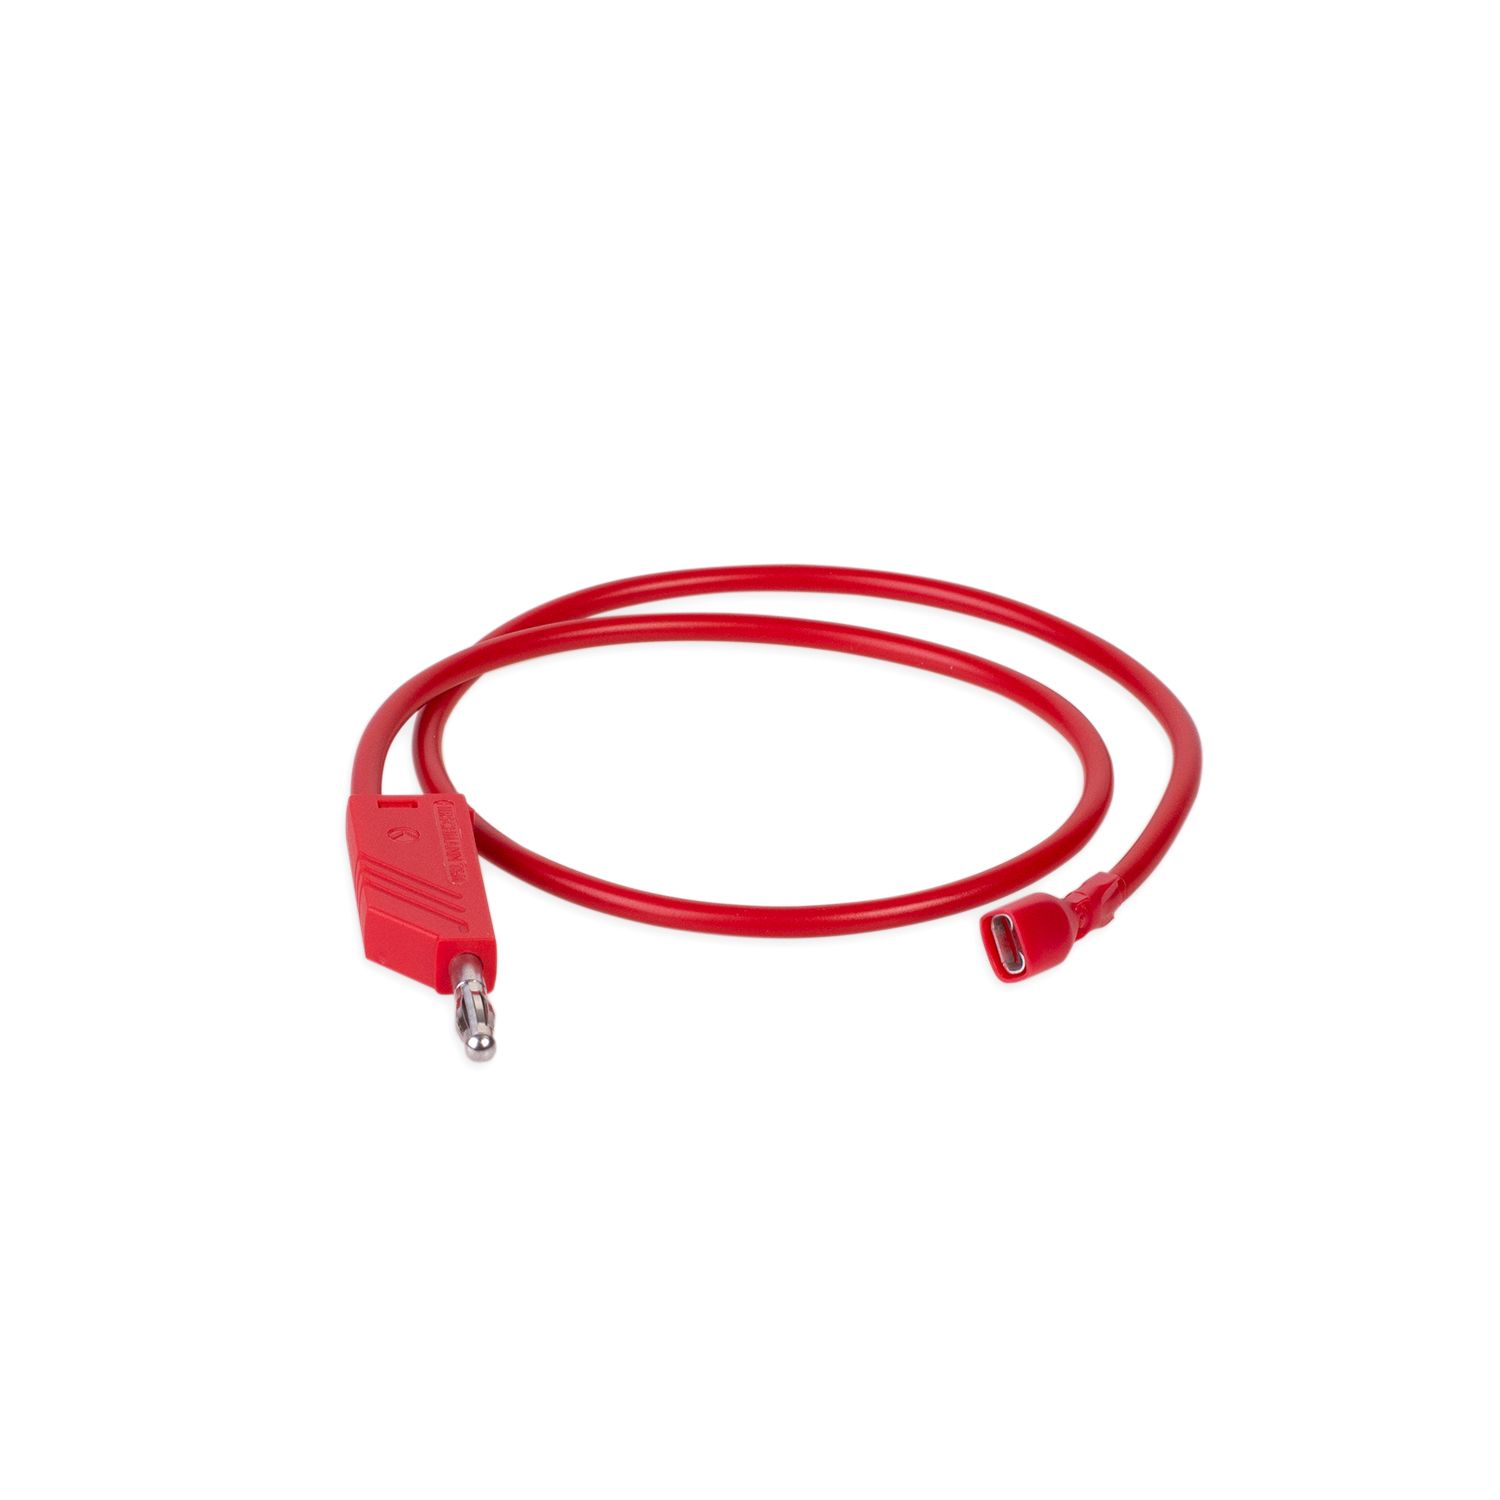 Kabel rot für RMgo!/ RM01